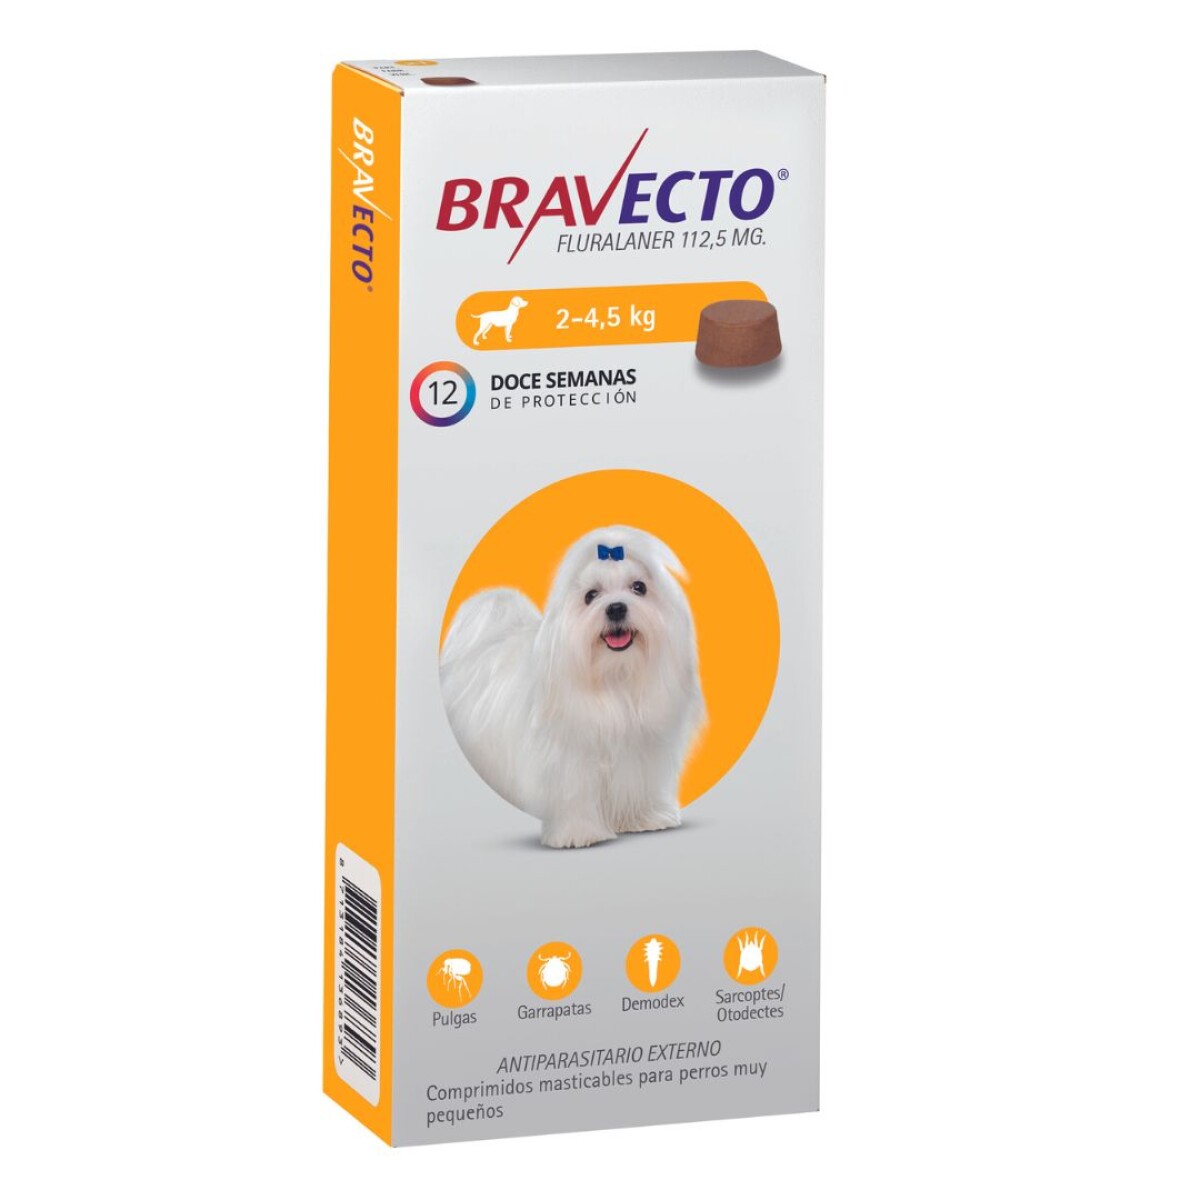 Bravecto 2 - 4.5 Kg 